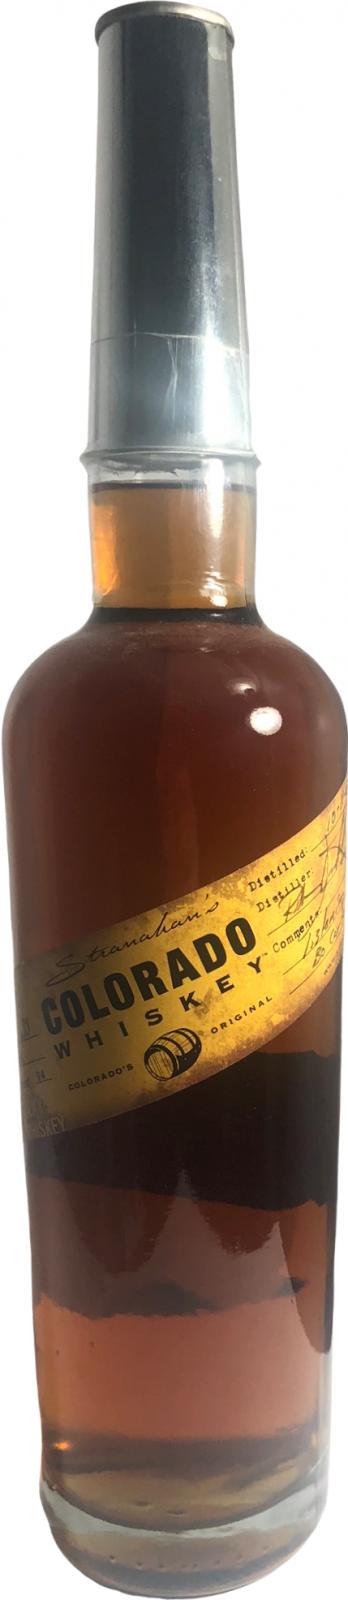 Stranahan's Straight Colorado Whisky New Charred Oak Batch 39 47% 750ml